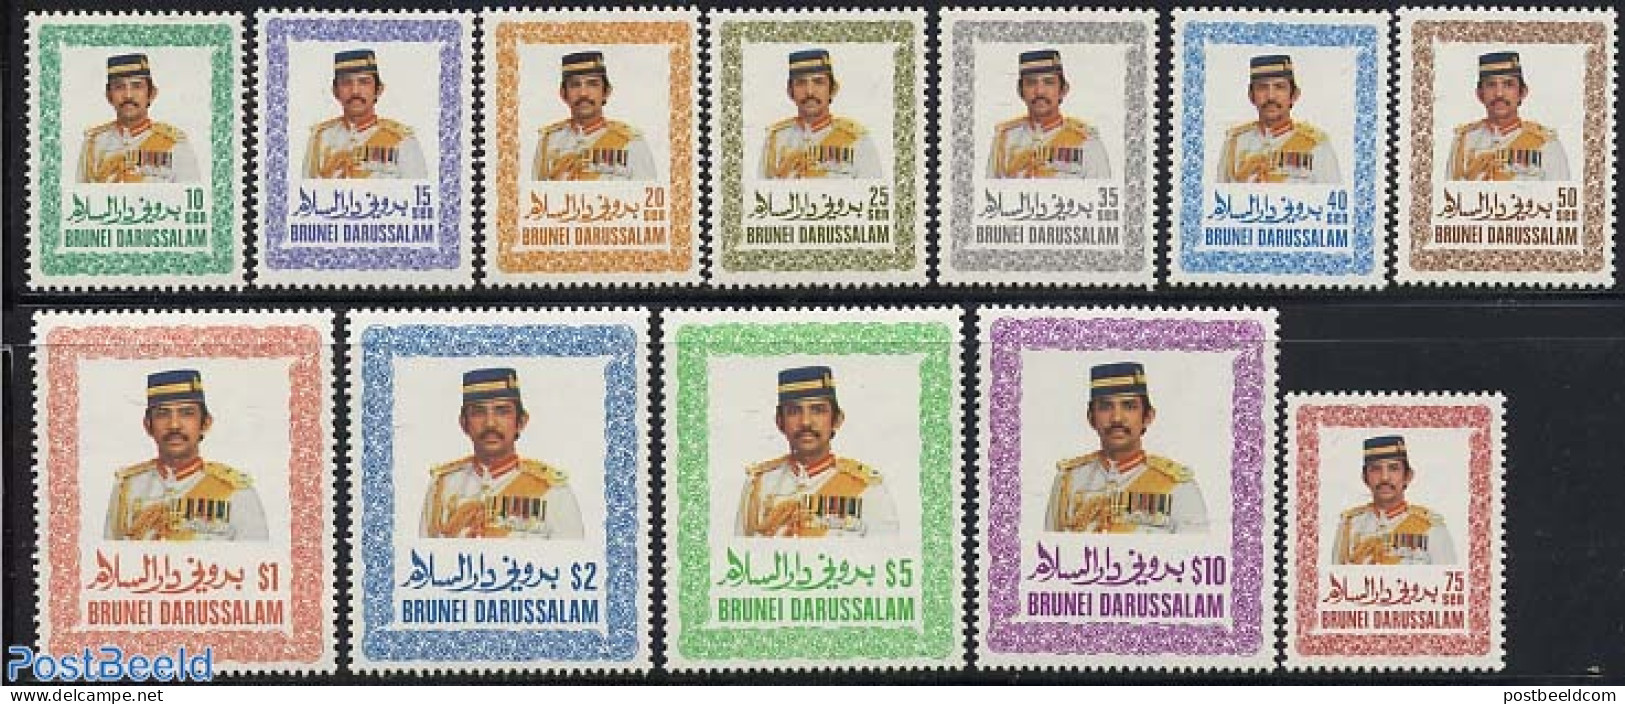 Brunei 1985 Definitives 12v, Mint NH - Brunei (1984-...)